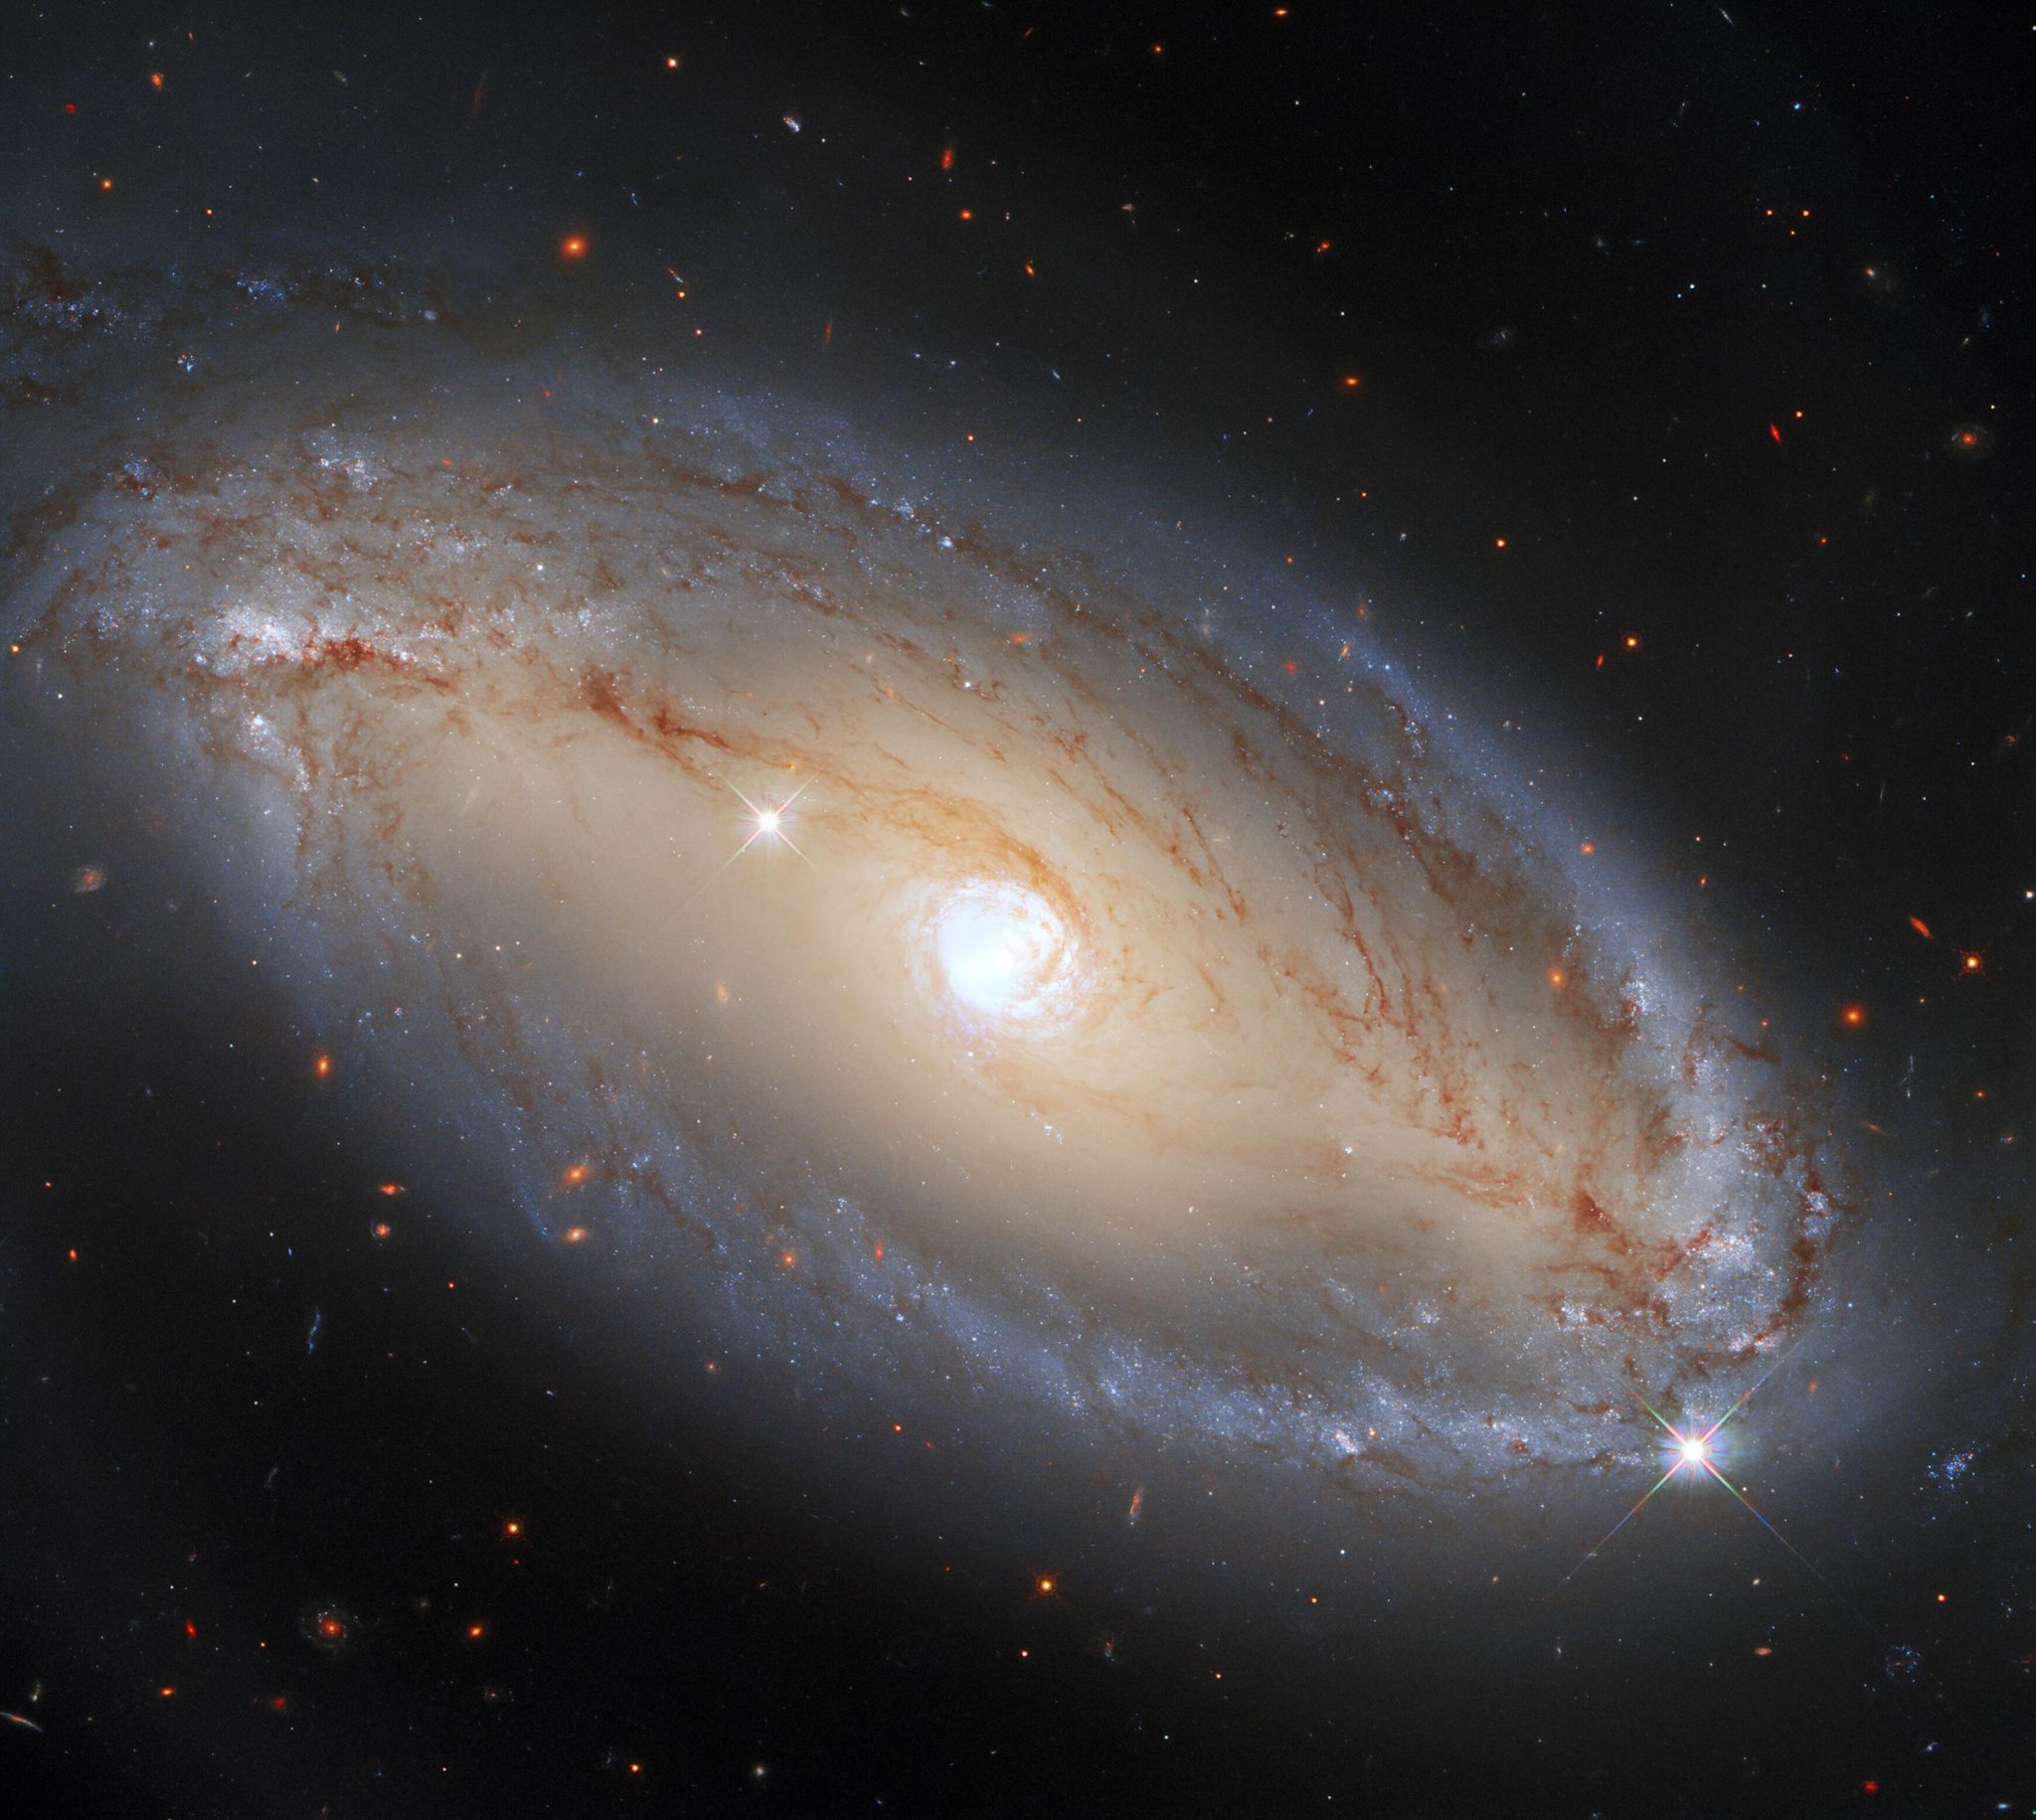 哈勃望远镜第三代广域照相机(WFC3)拍摄的螺旋星系NGC 5728